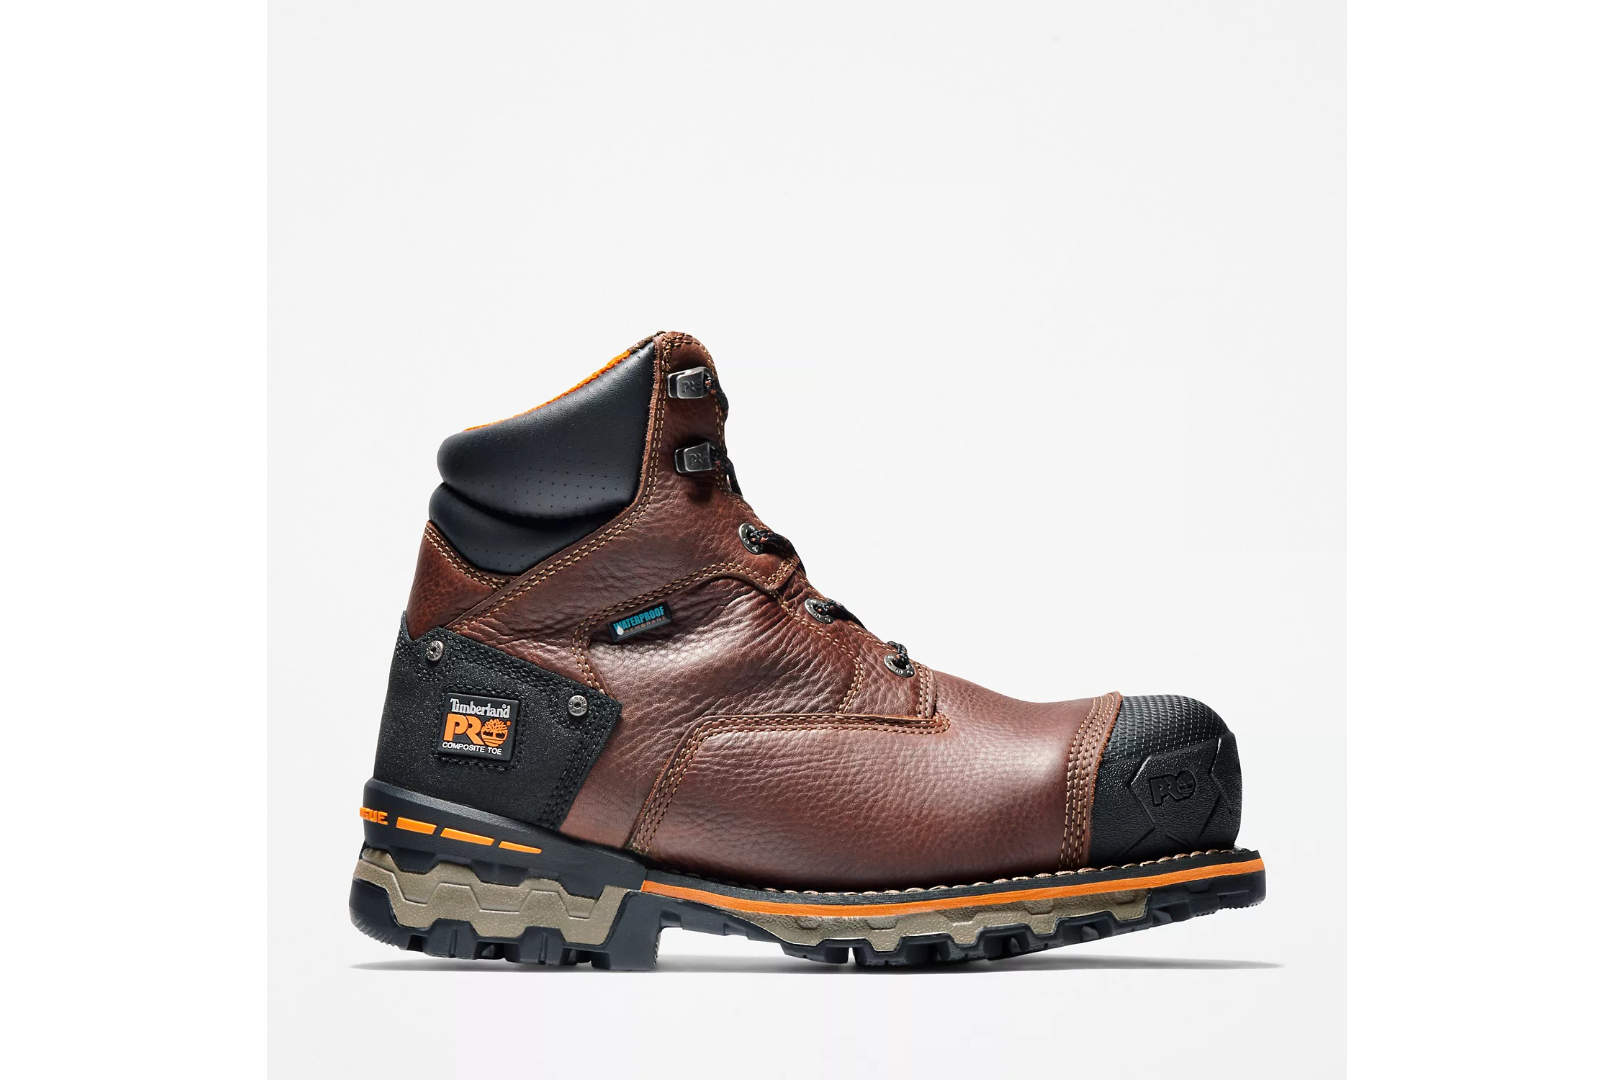 TB092641214 - Timberland Pro Men's Boondock 6-inch Composite Toe Waterproof Work Boot